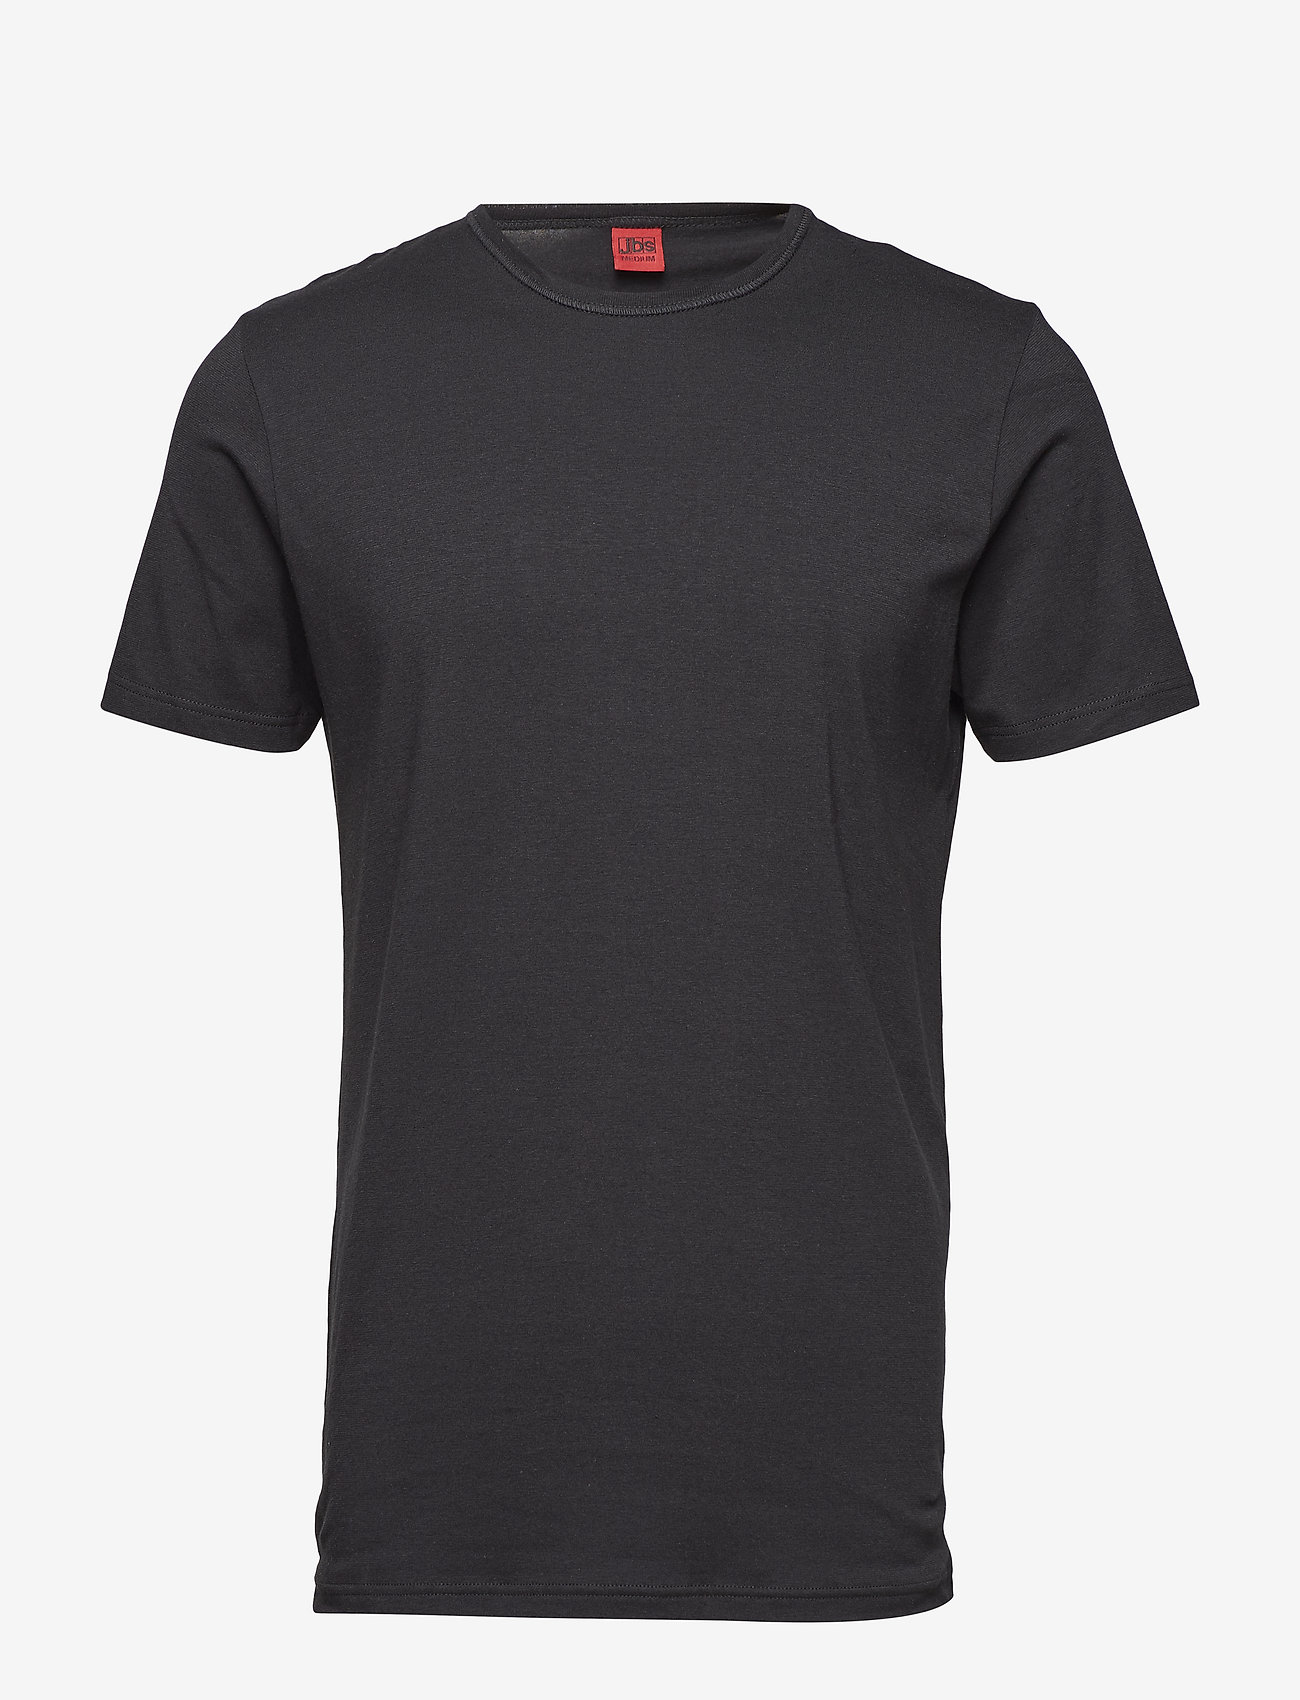 JBS - JBS t-shirt O-neck - mažiausios kainos - black - 0